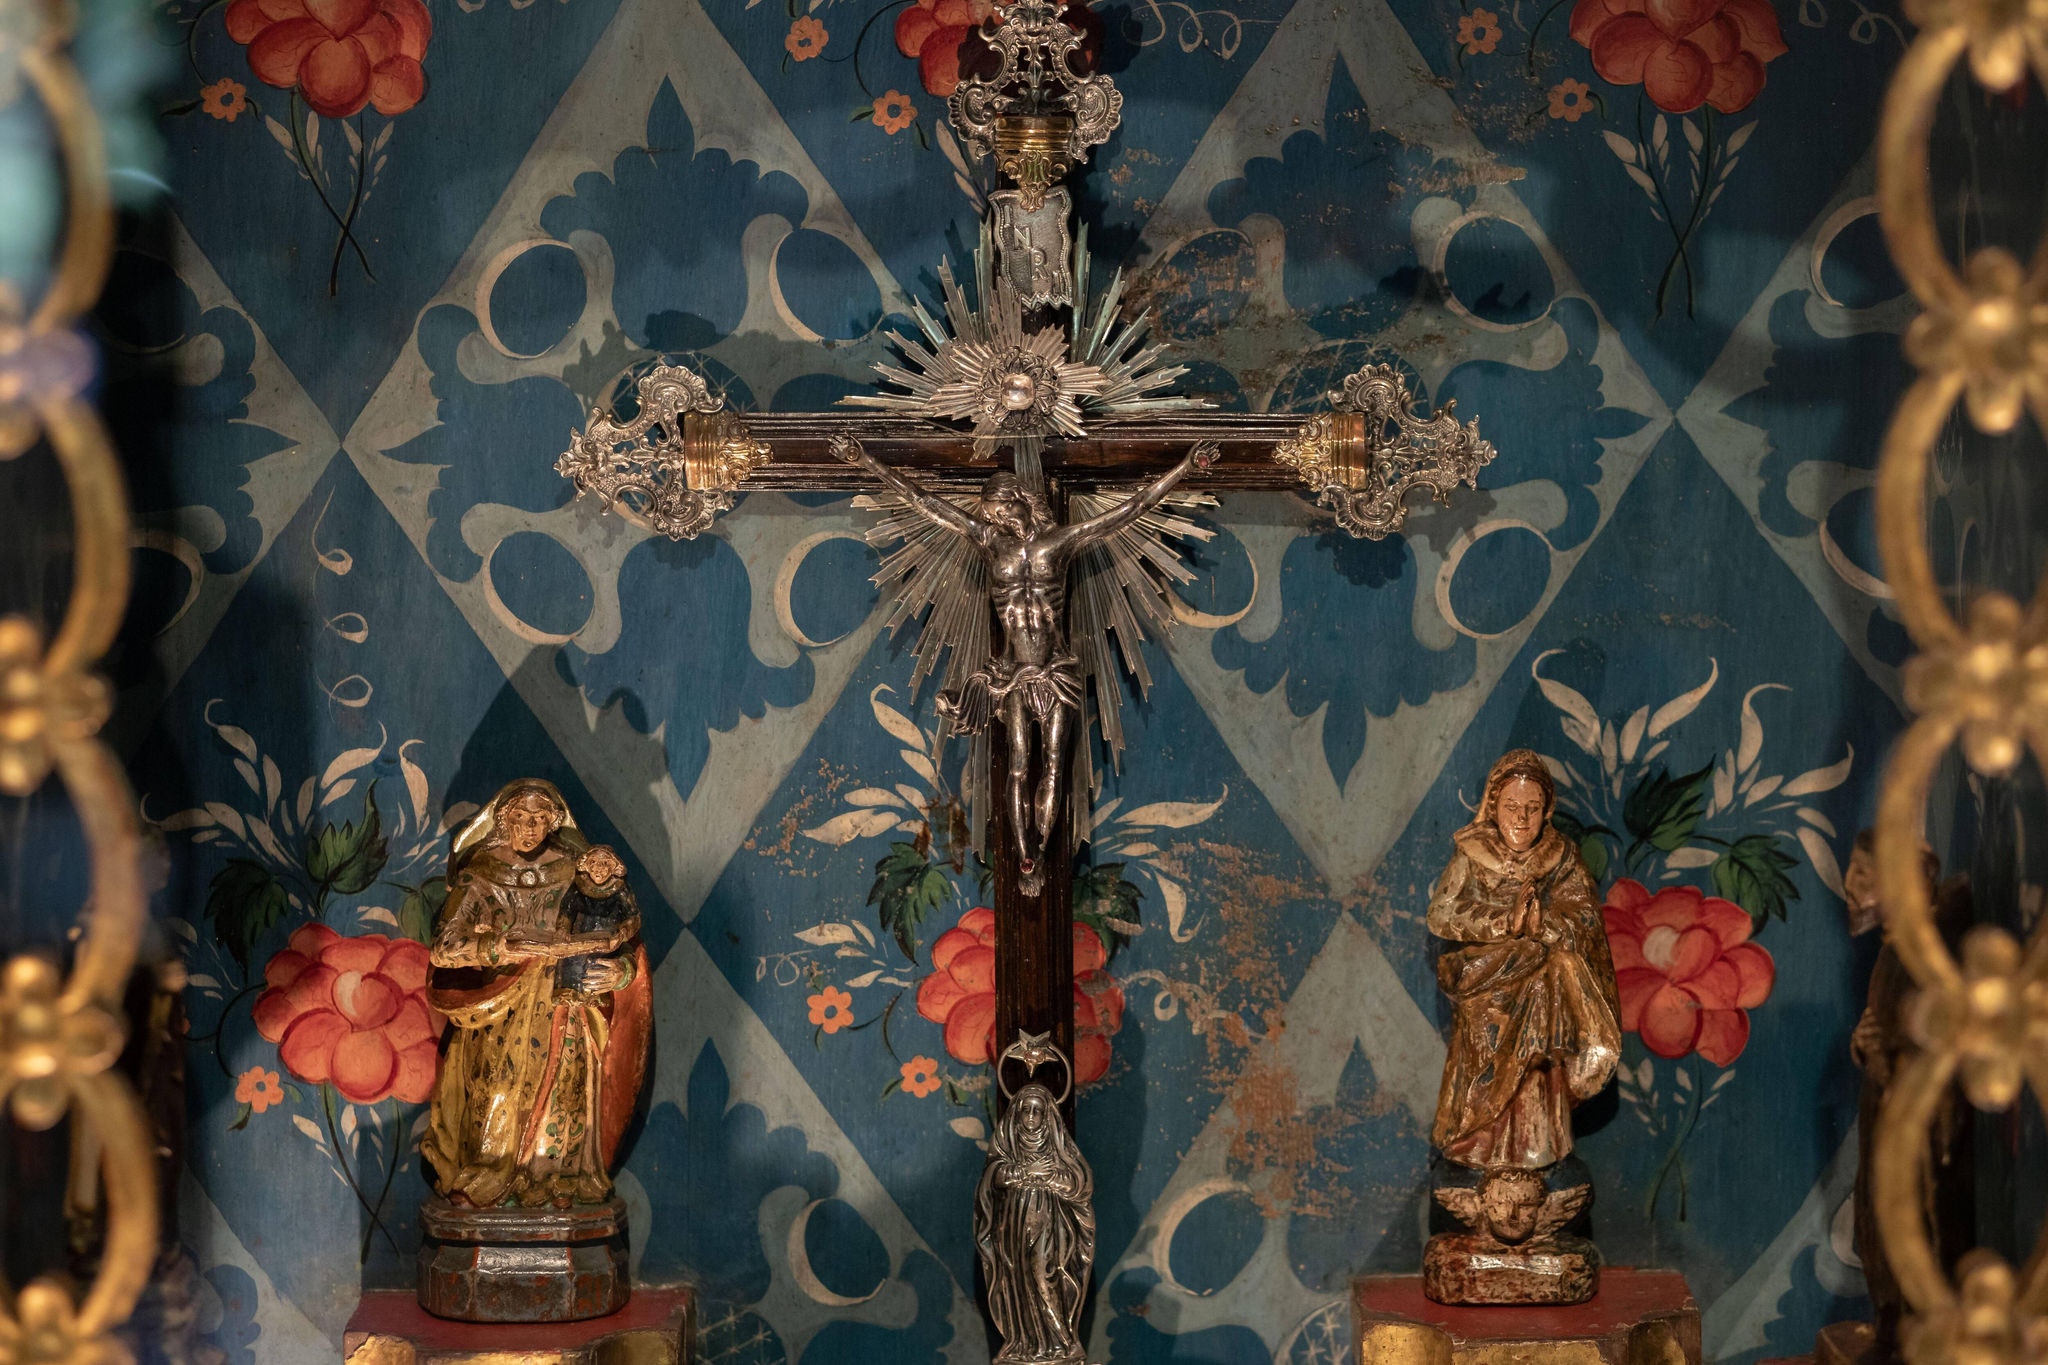 Imagens sacras no interior de um oratório em exibição no Museu do Oratório, em Ouro Preto